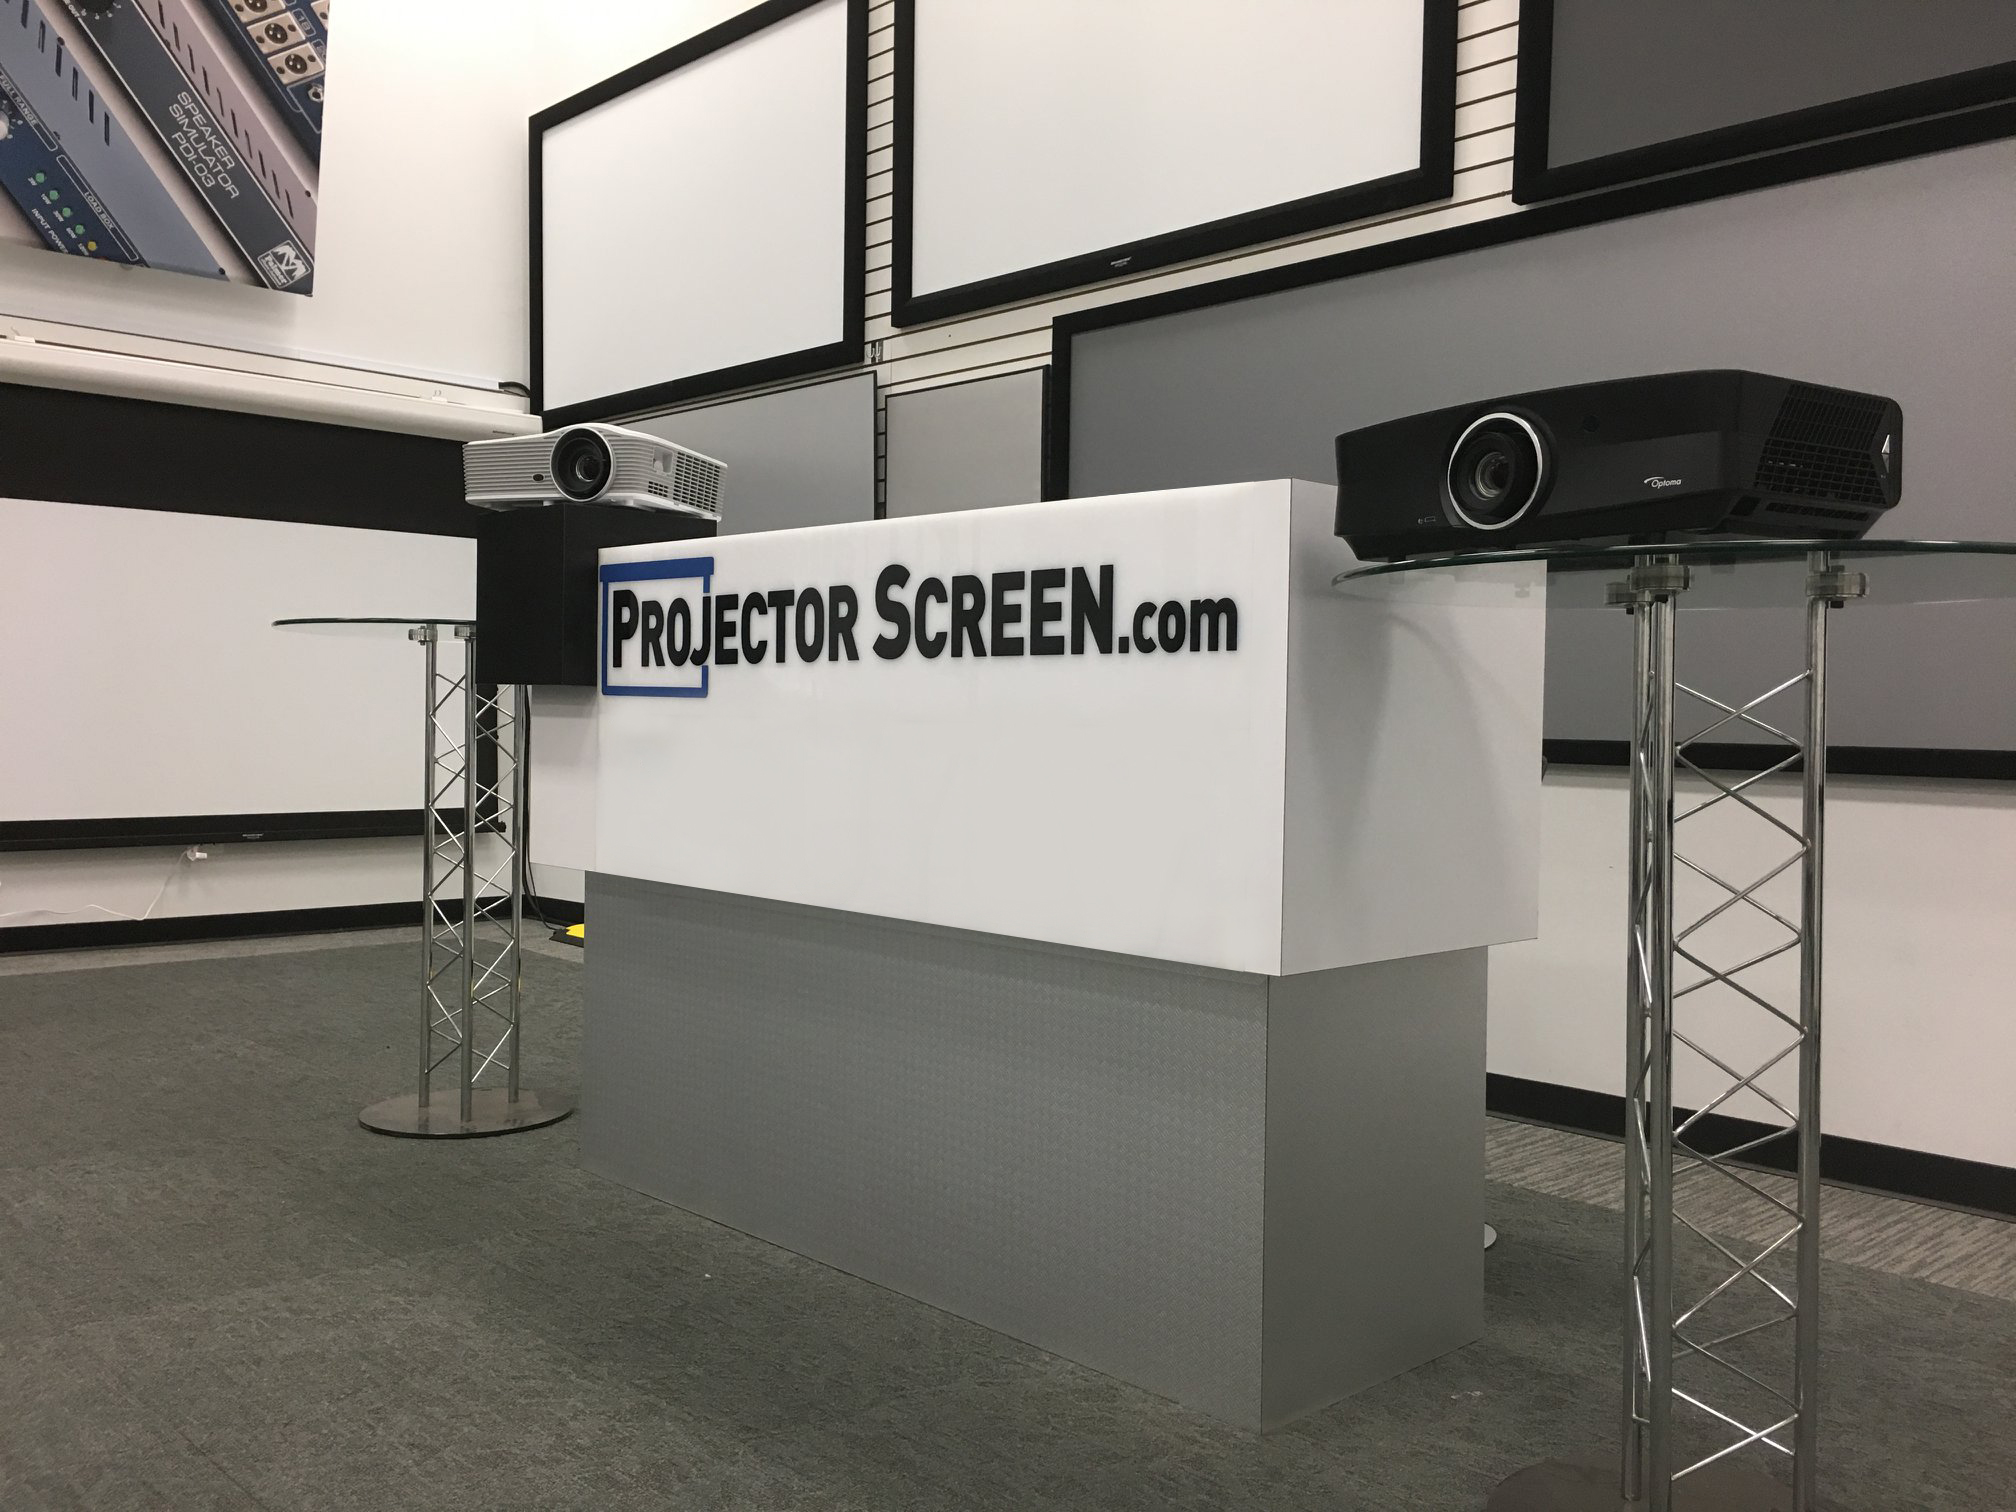 www.projectorscreen.com